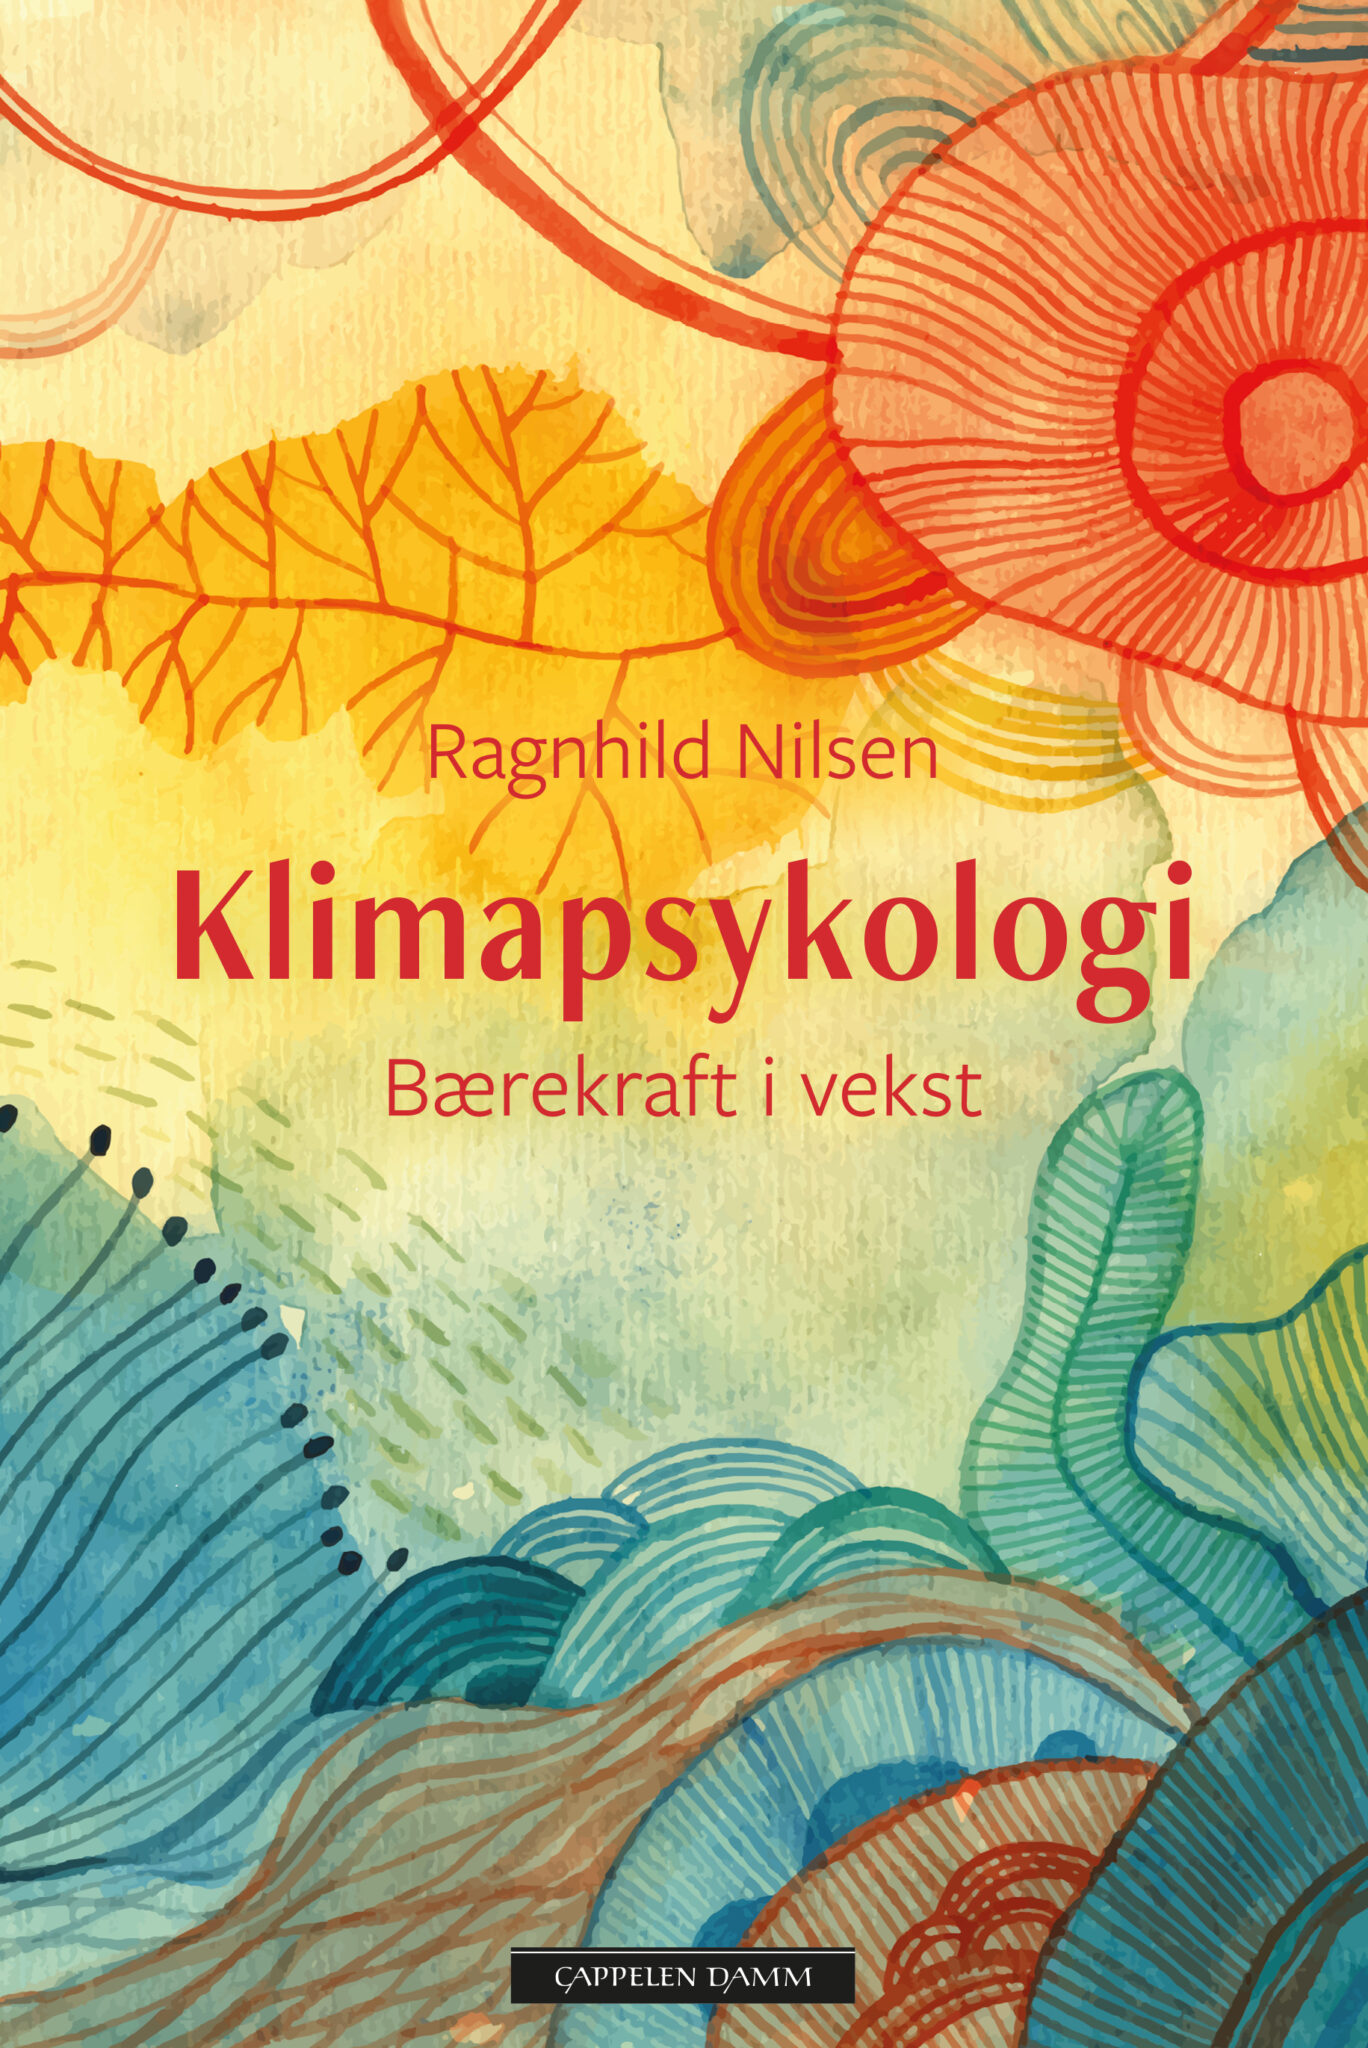 Bilde av coveret til boken Klimapsykologi.